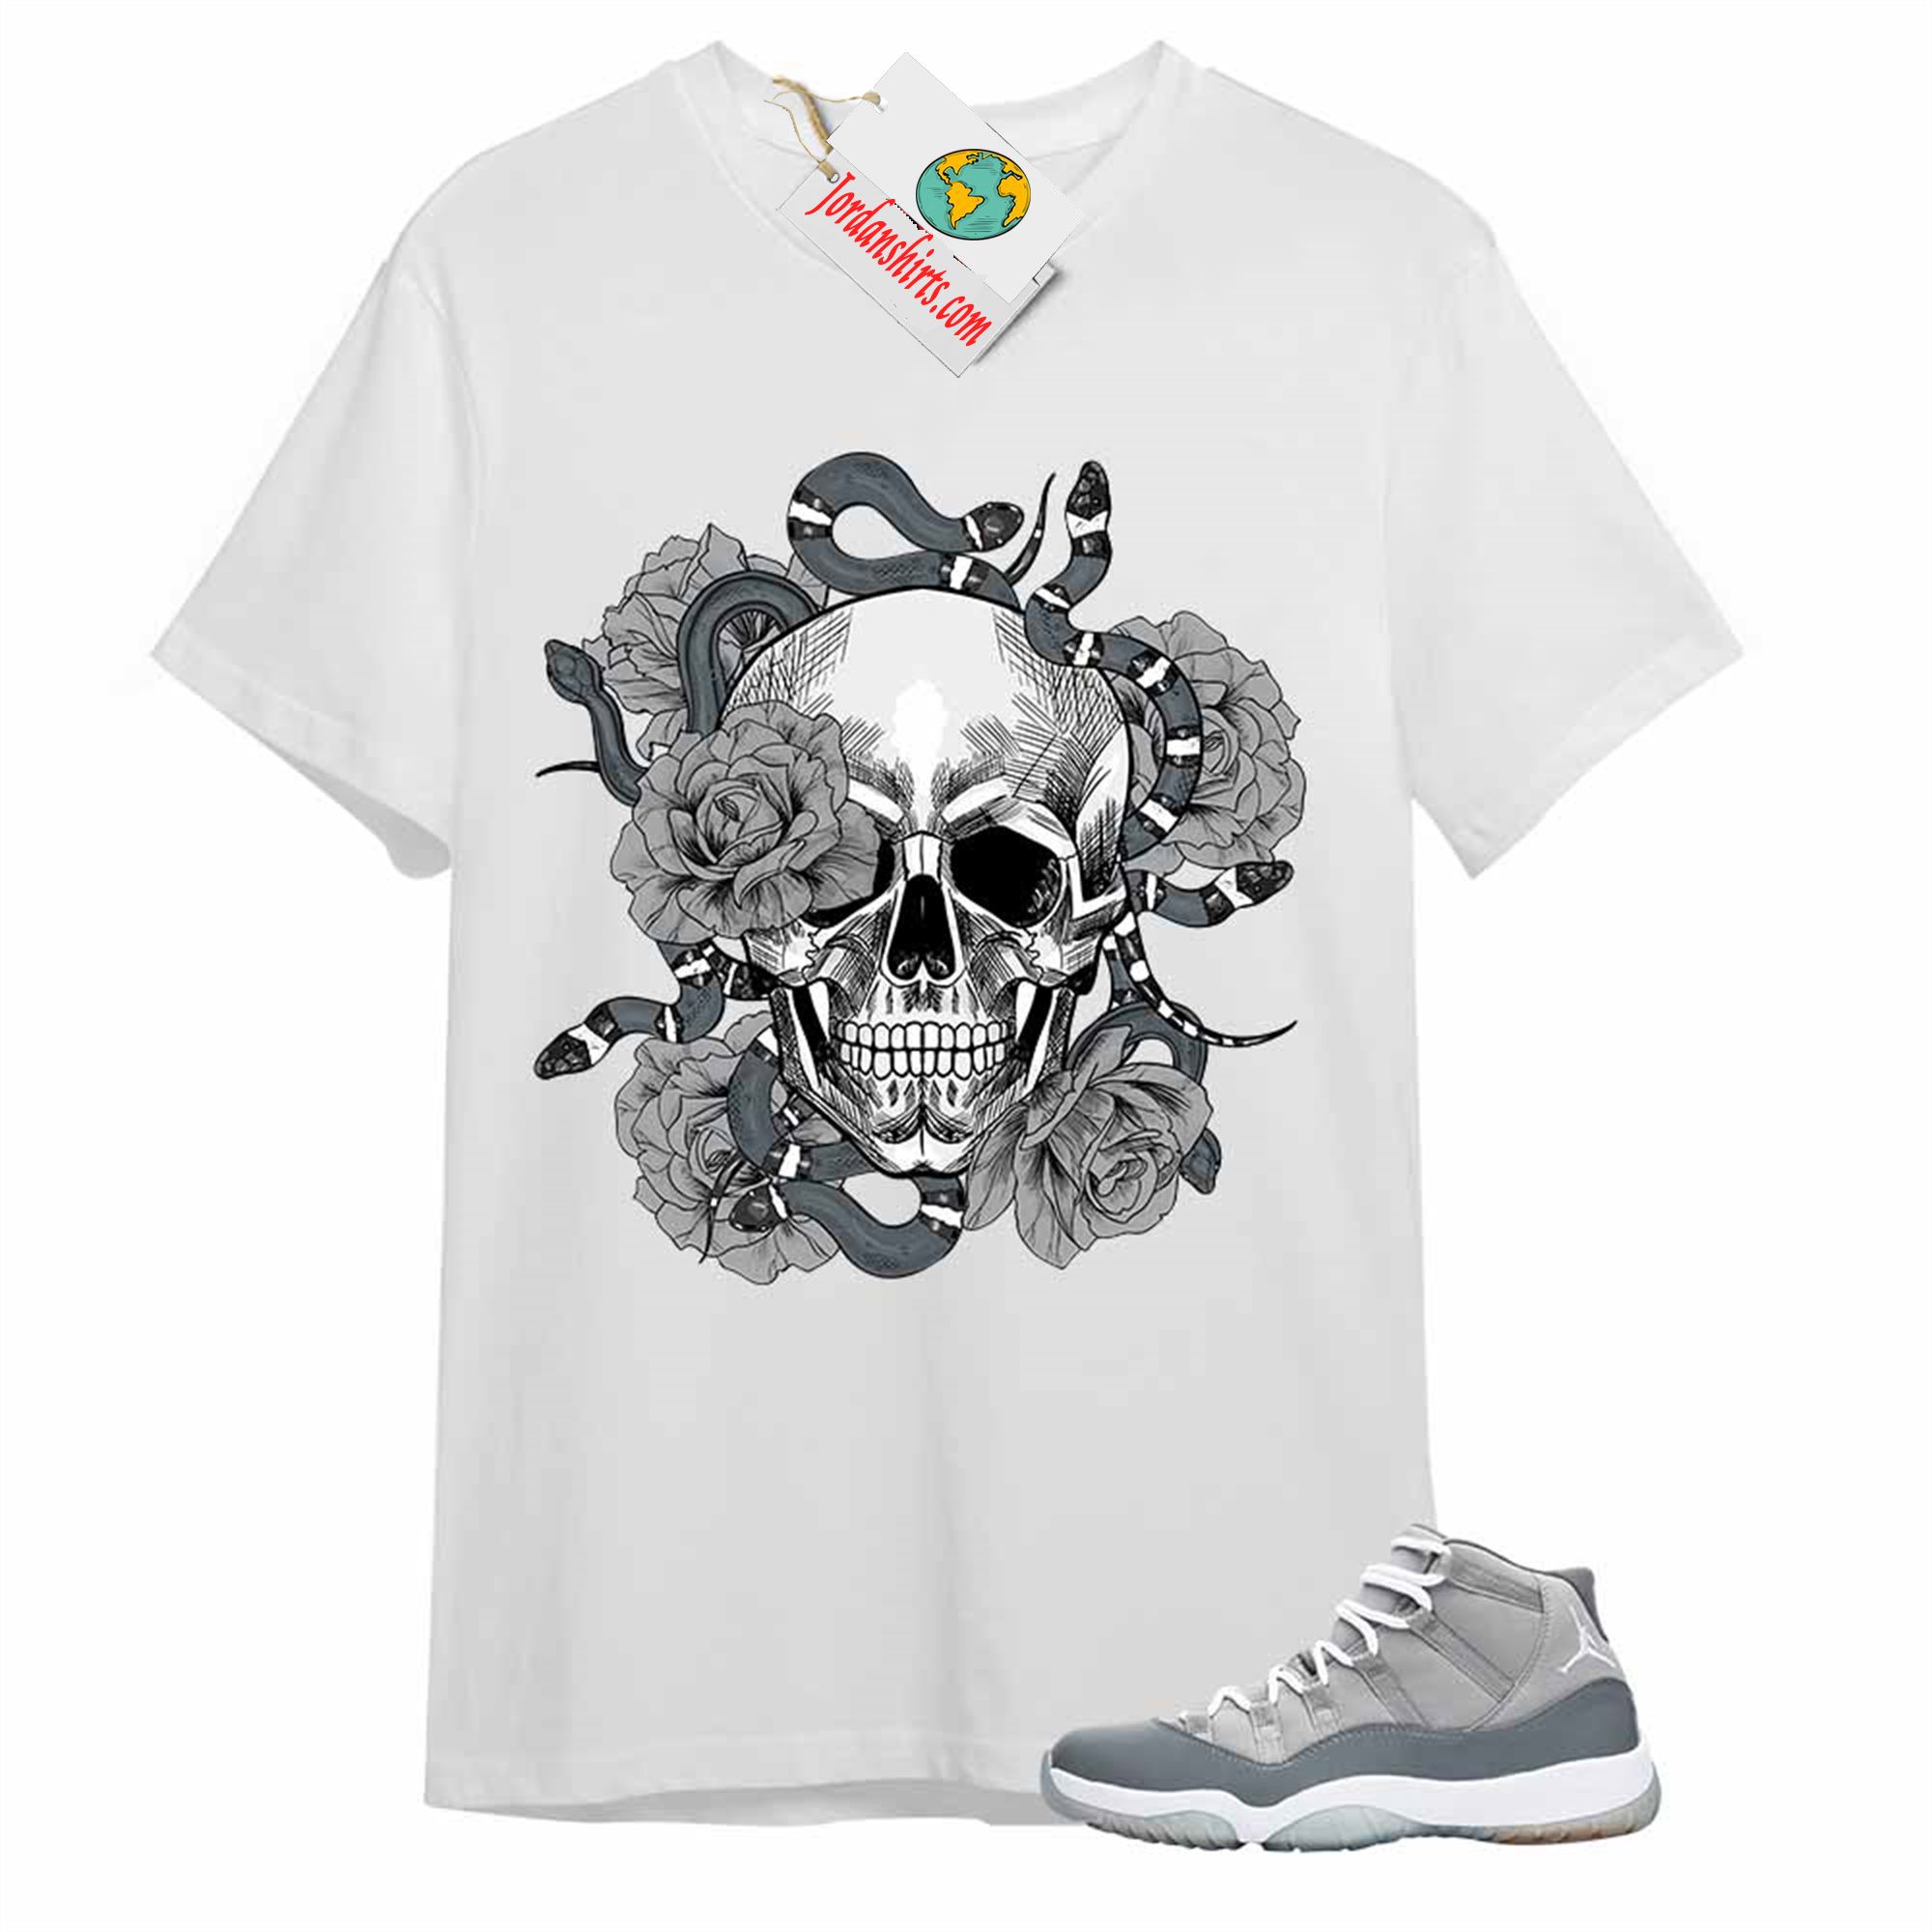 Jordan 11 Shirt, Snake Skull Rose White T-shirt Air Jordan 11 Cool Grey 11s Plus Size Up To 5xl